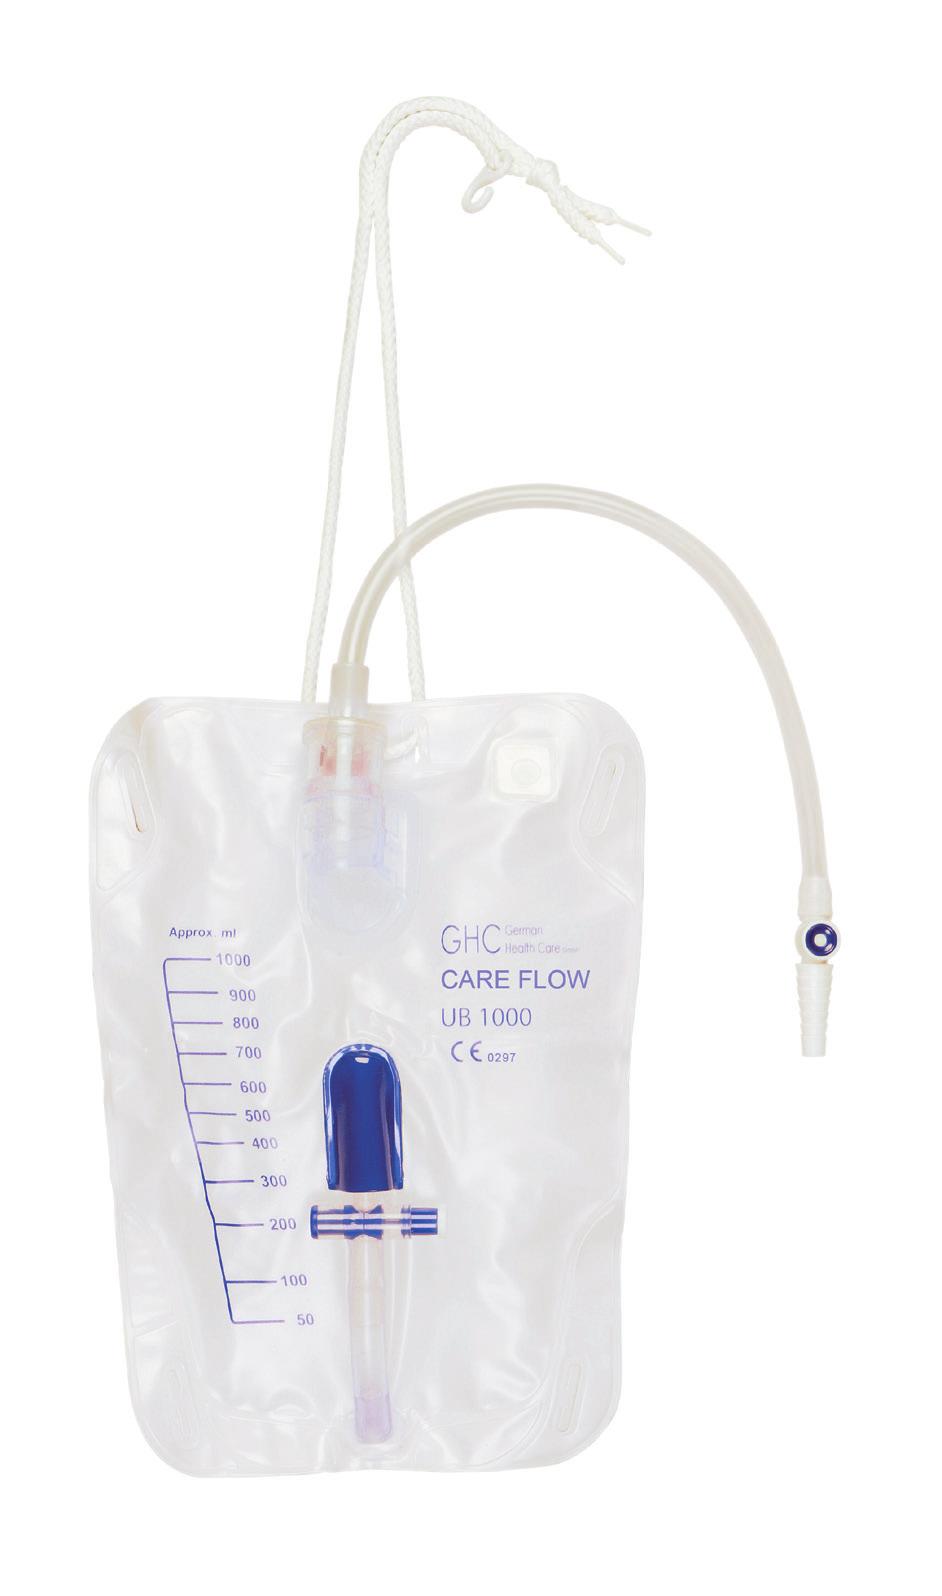 Eine auf dem Beutel aufgebrachte Rückstecklasche garantiert eine sichere und zugleich hygienische Positionierung des Ablasshahns.